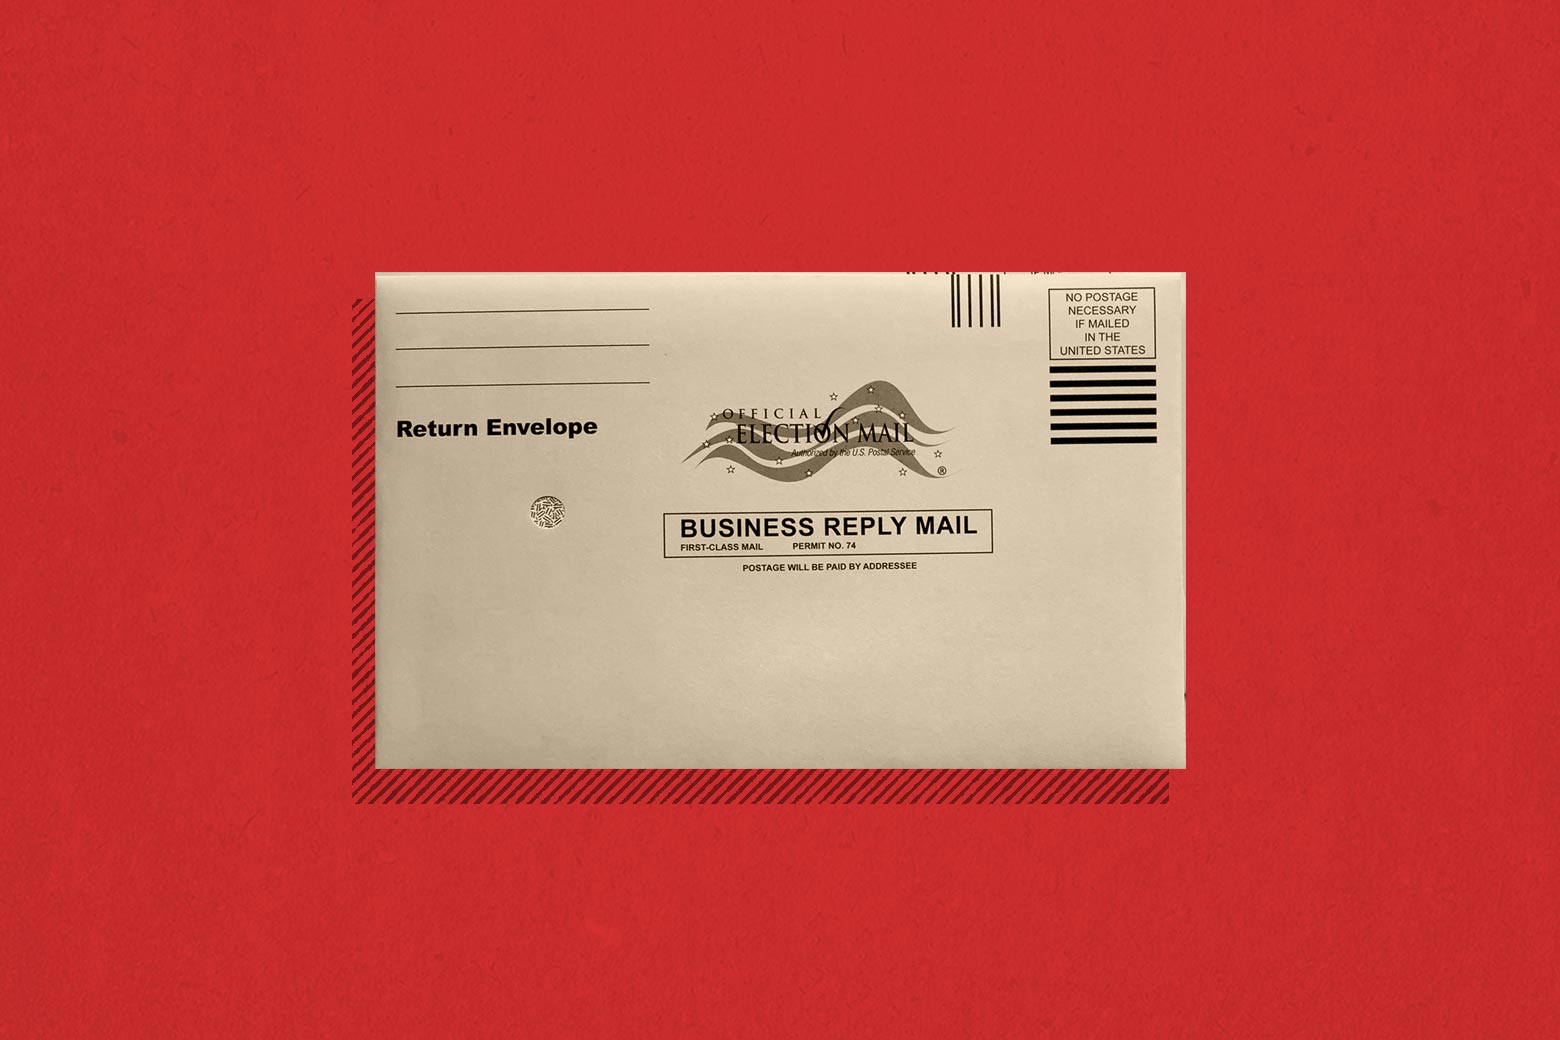 An envelope for an absentee ballot